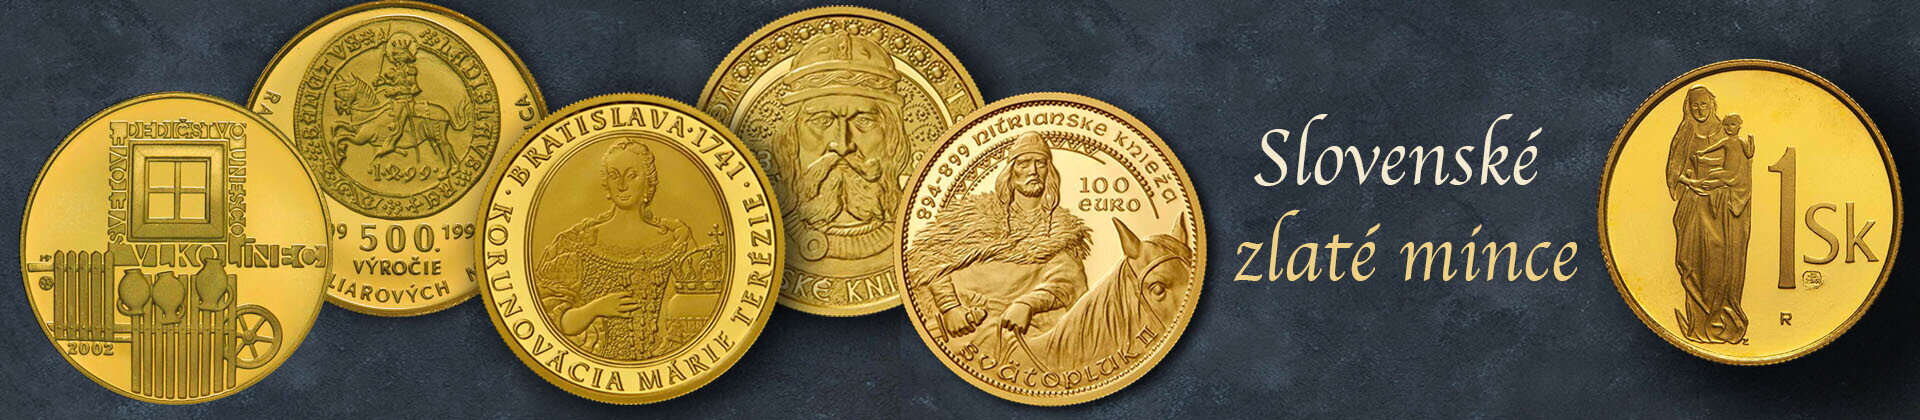 slovenské zberateľské zlaté mince